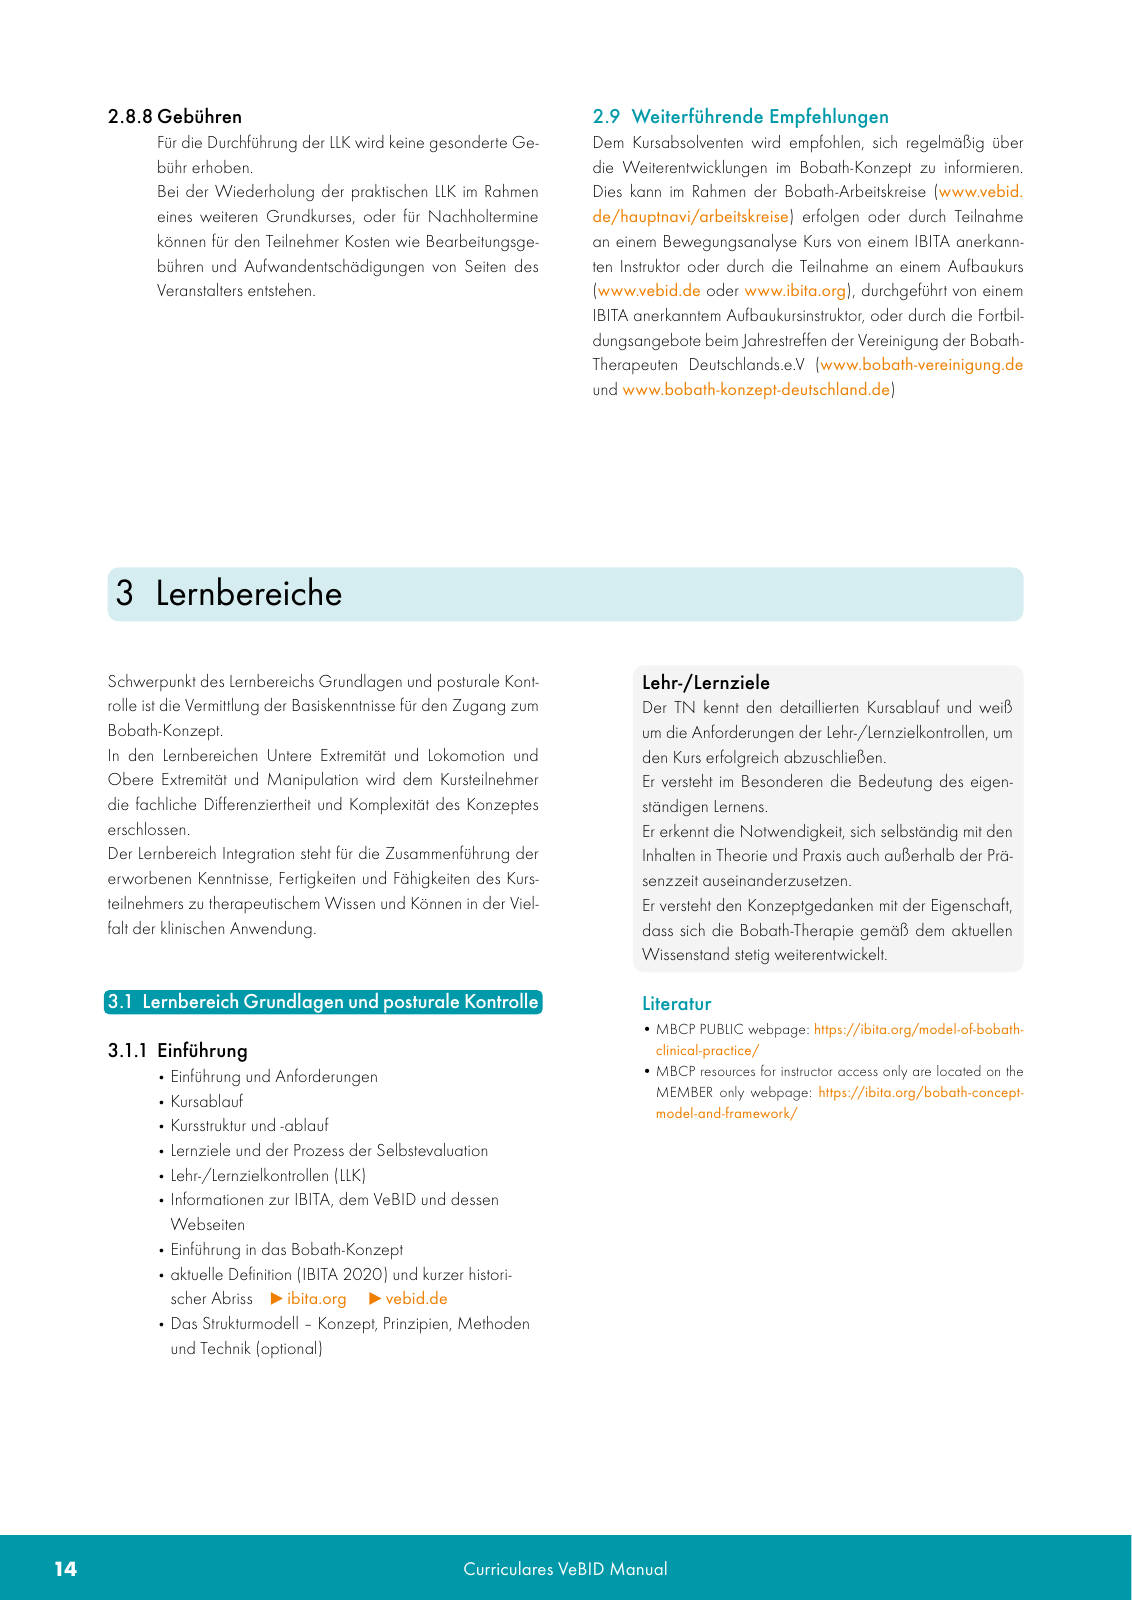 Vorschau VeBID Curriculum 2022 Seite 14